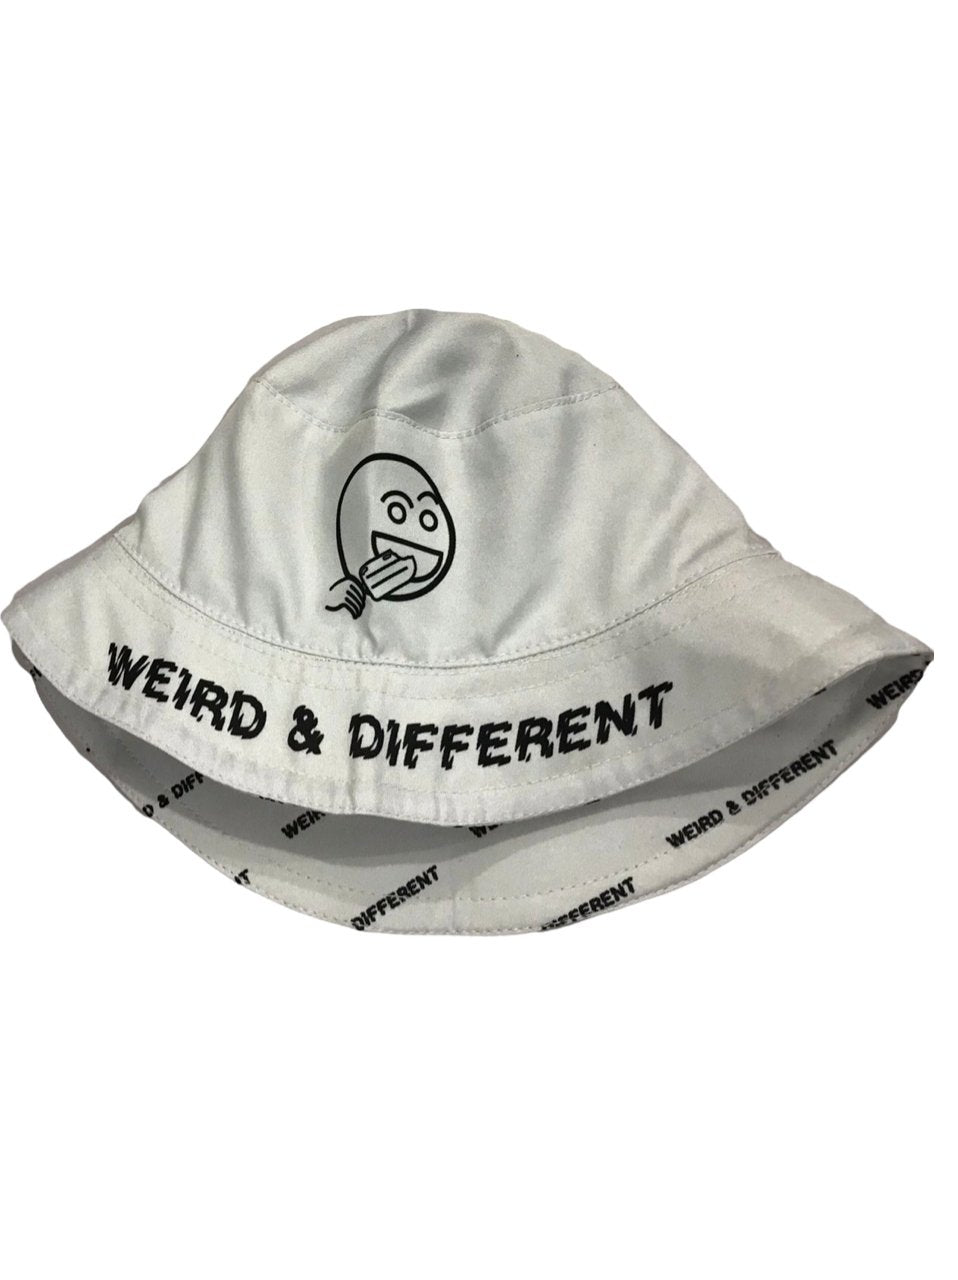 Reversible Bucket Hats - Weird & Different